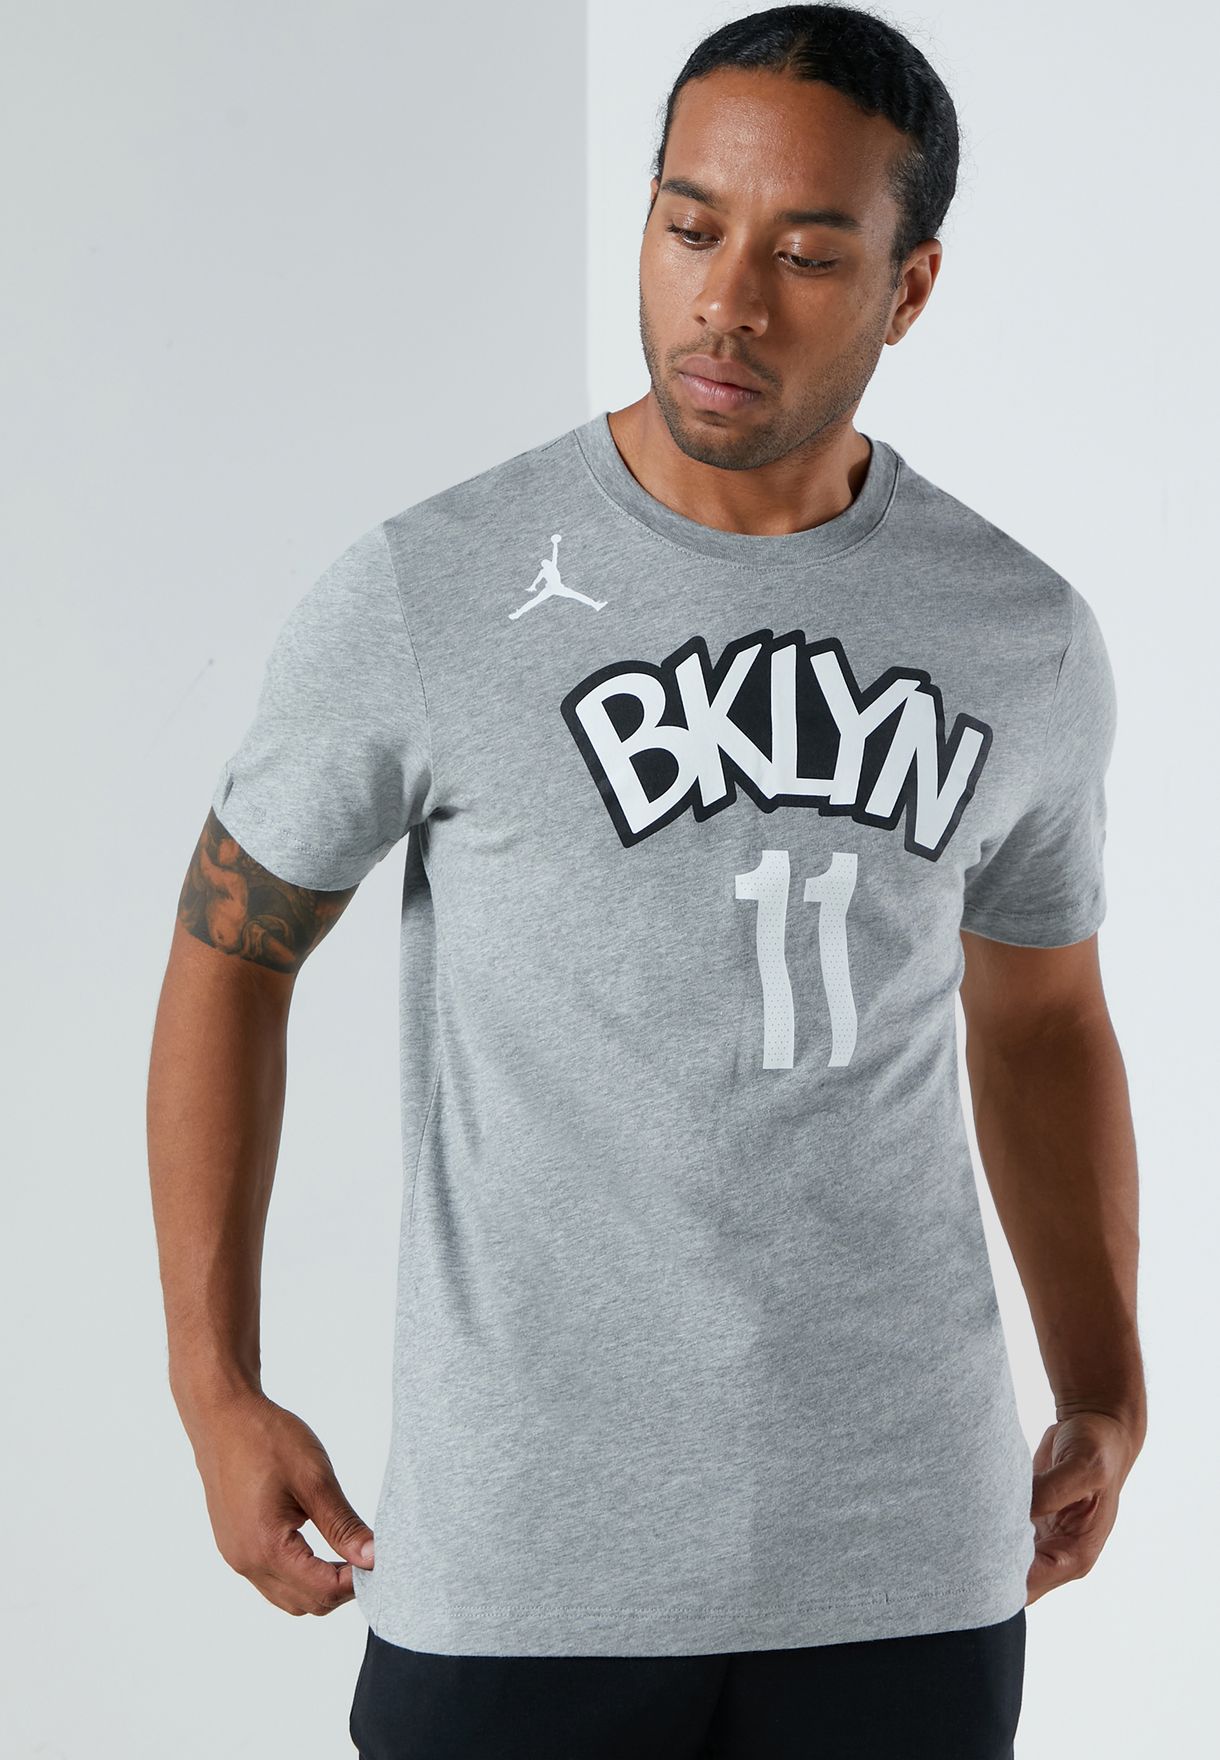 Buy > nike brooklyn nets t shirt > in stock